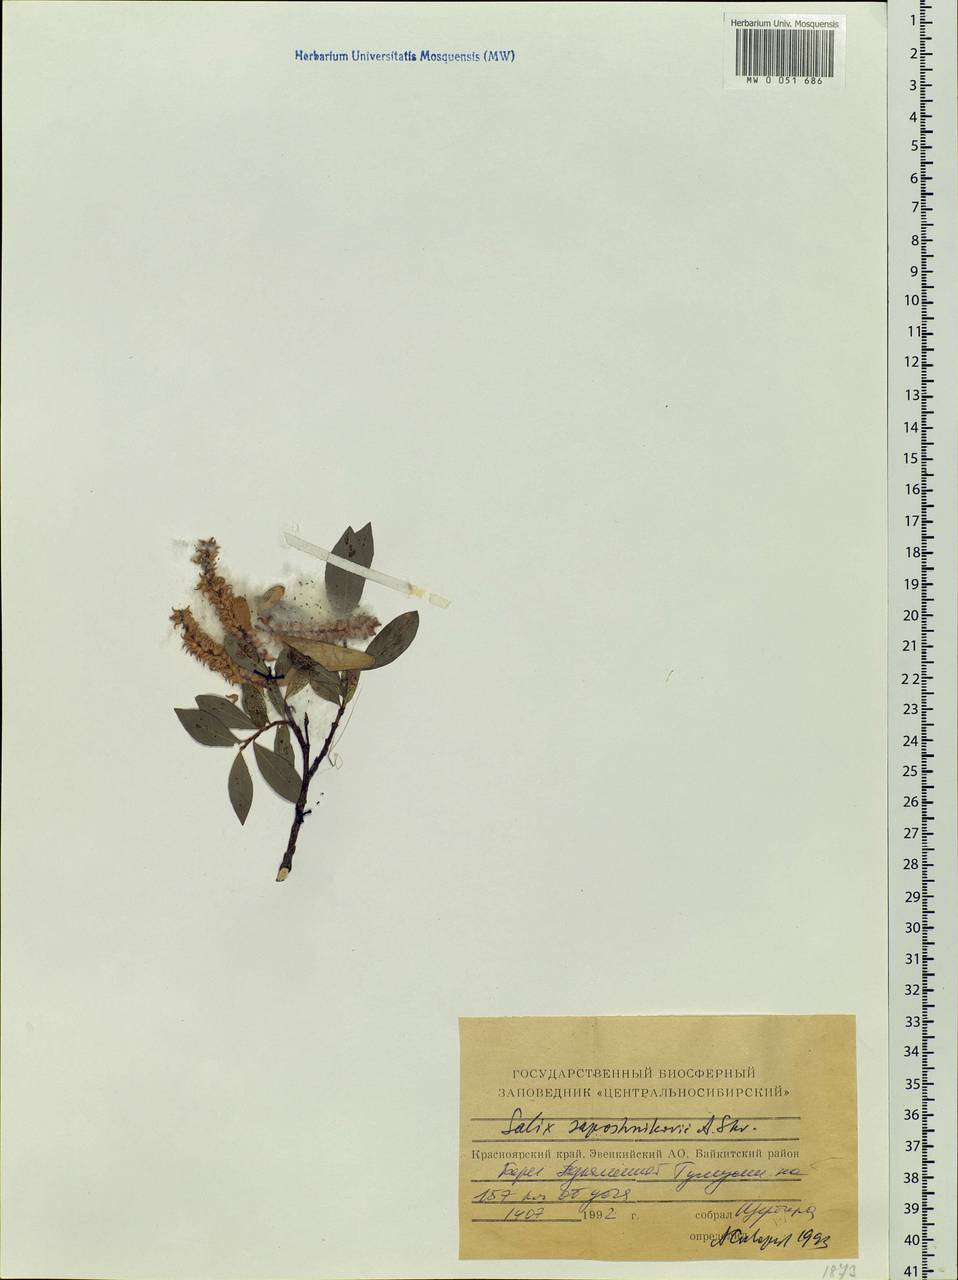 Salix saposhnikovii A. K. Skvortsov, Siberia, Central Siberia (S3) (Russia)